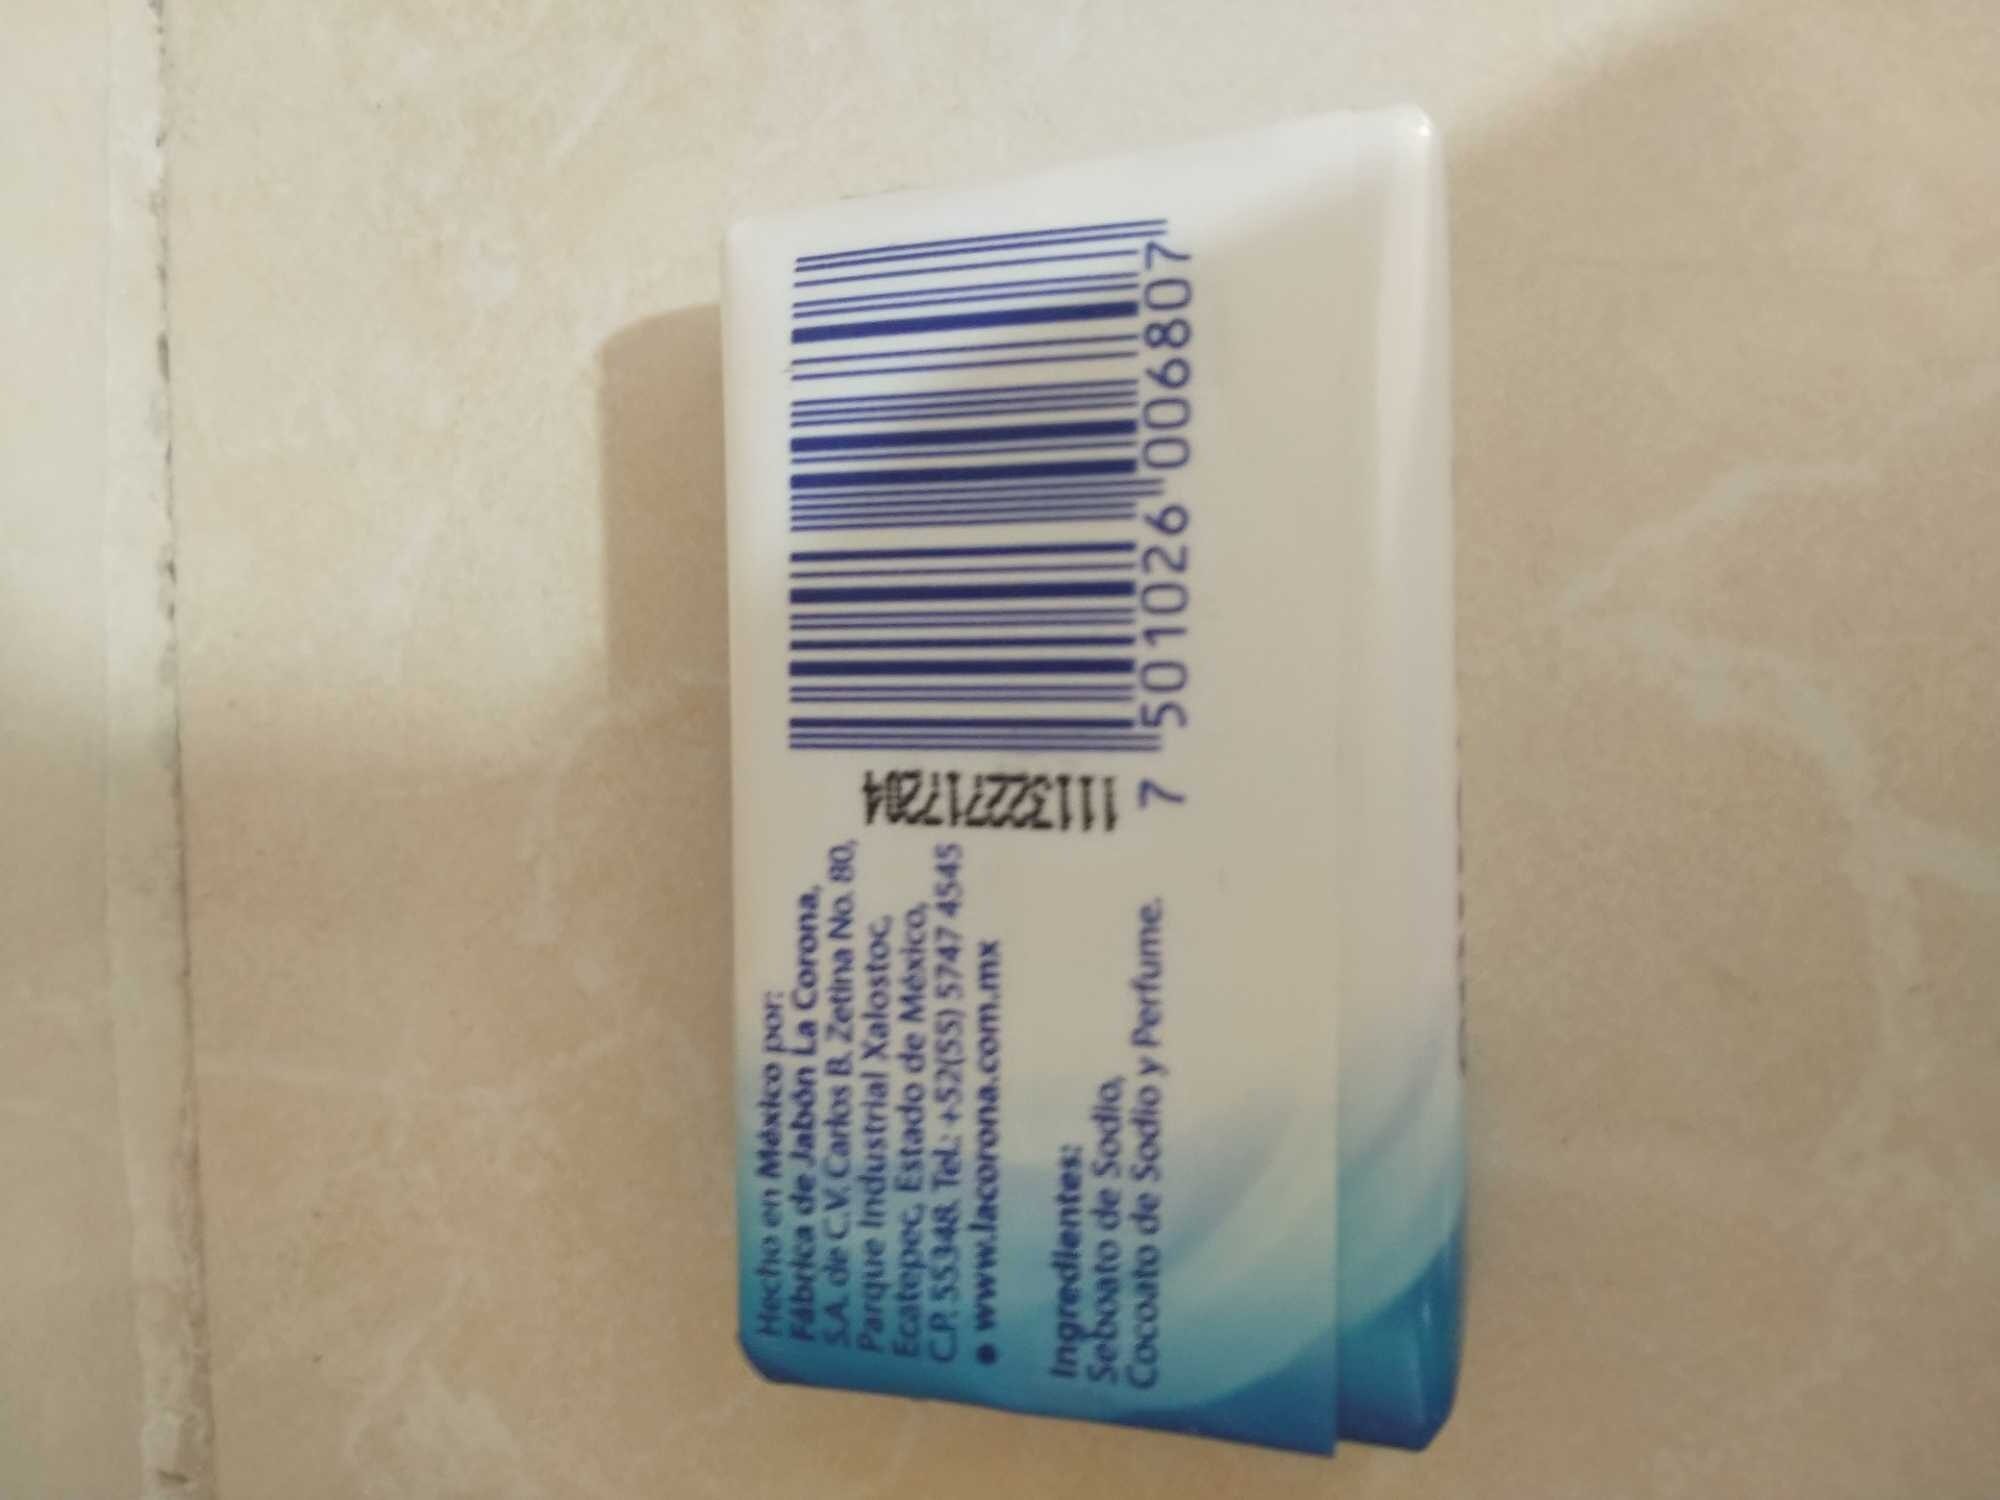 Jabón de tocador - Product - es